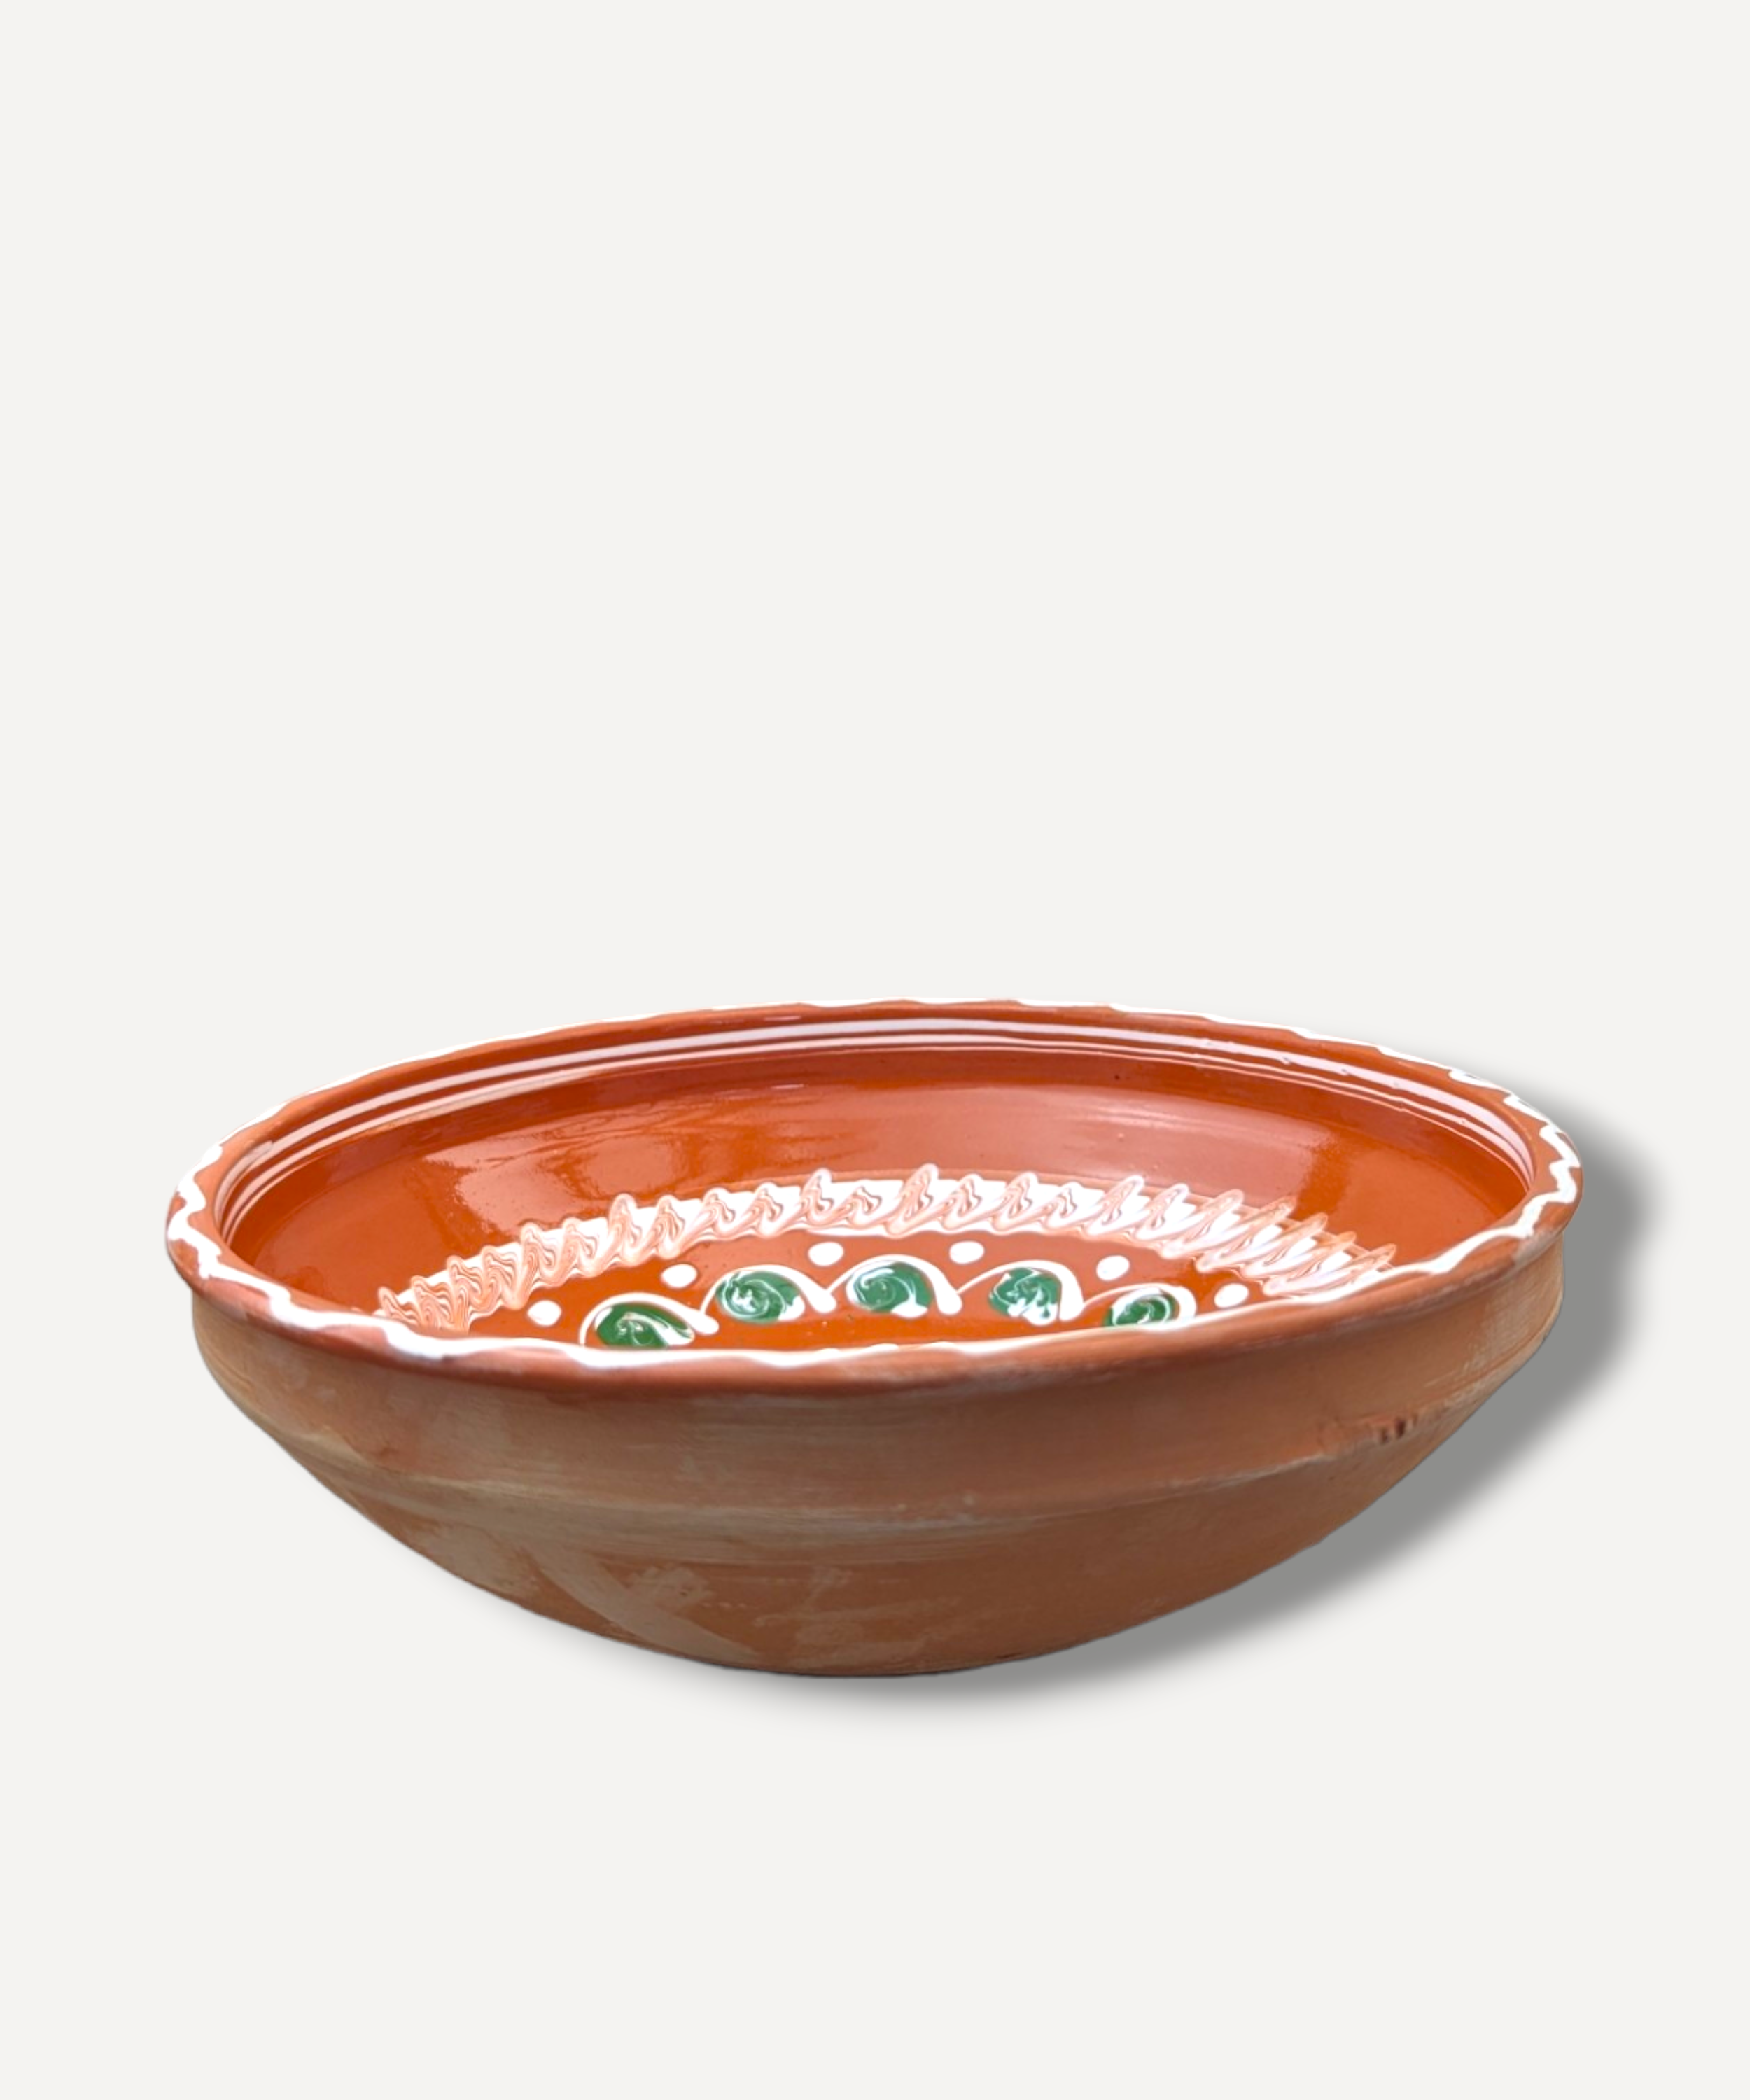 Tan - Fruit Bowl. II